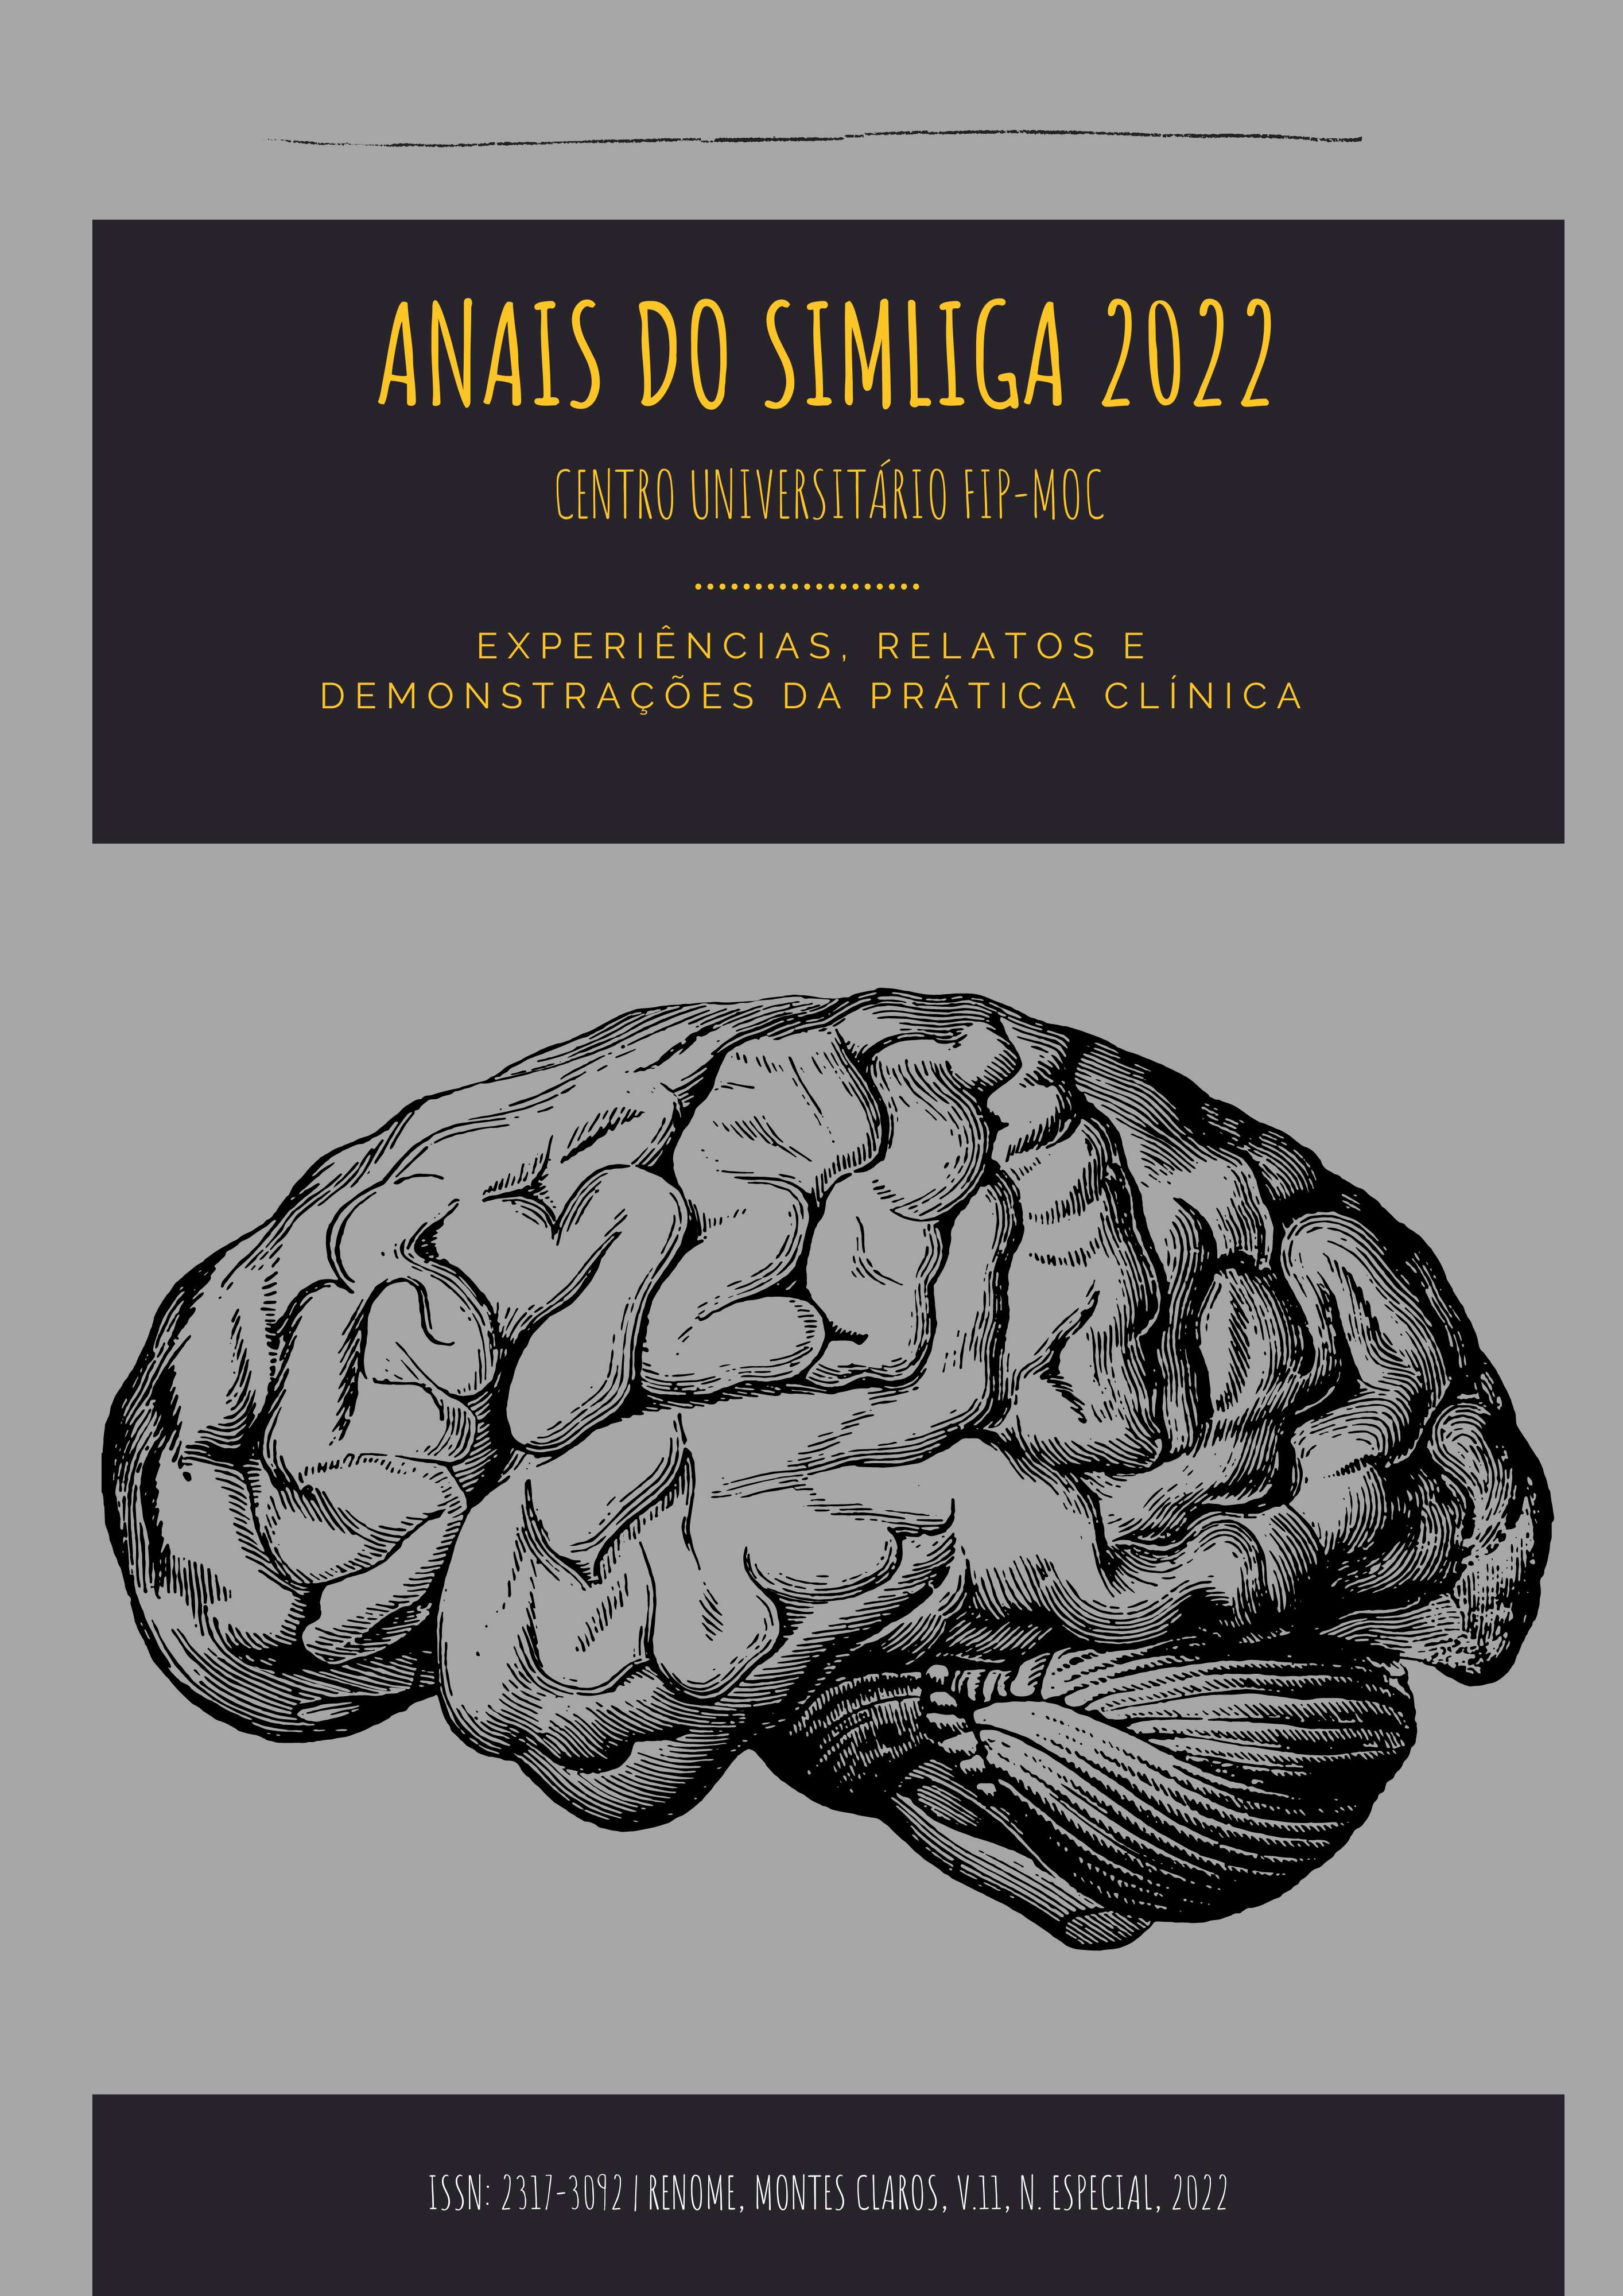 					Visualizar v. 11 n. Especial (2022): ANAIS DO SIMLIGA 2022
				